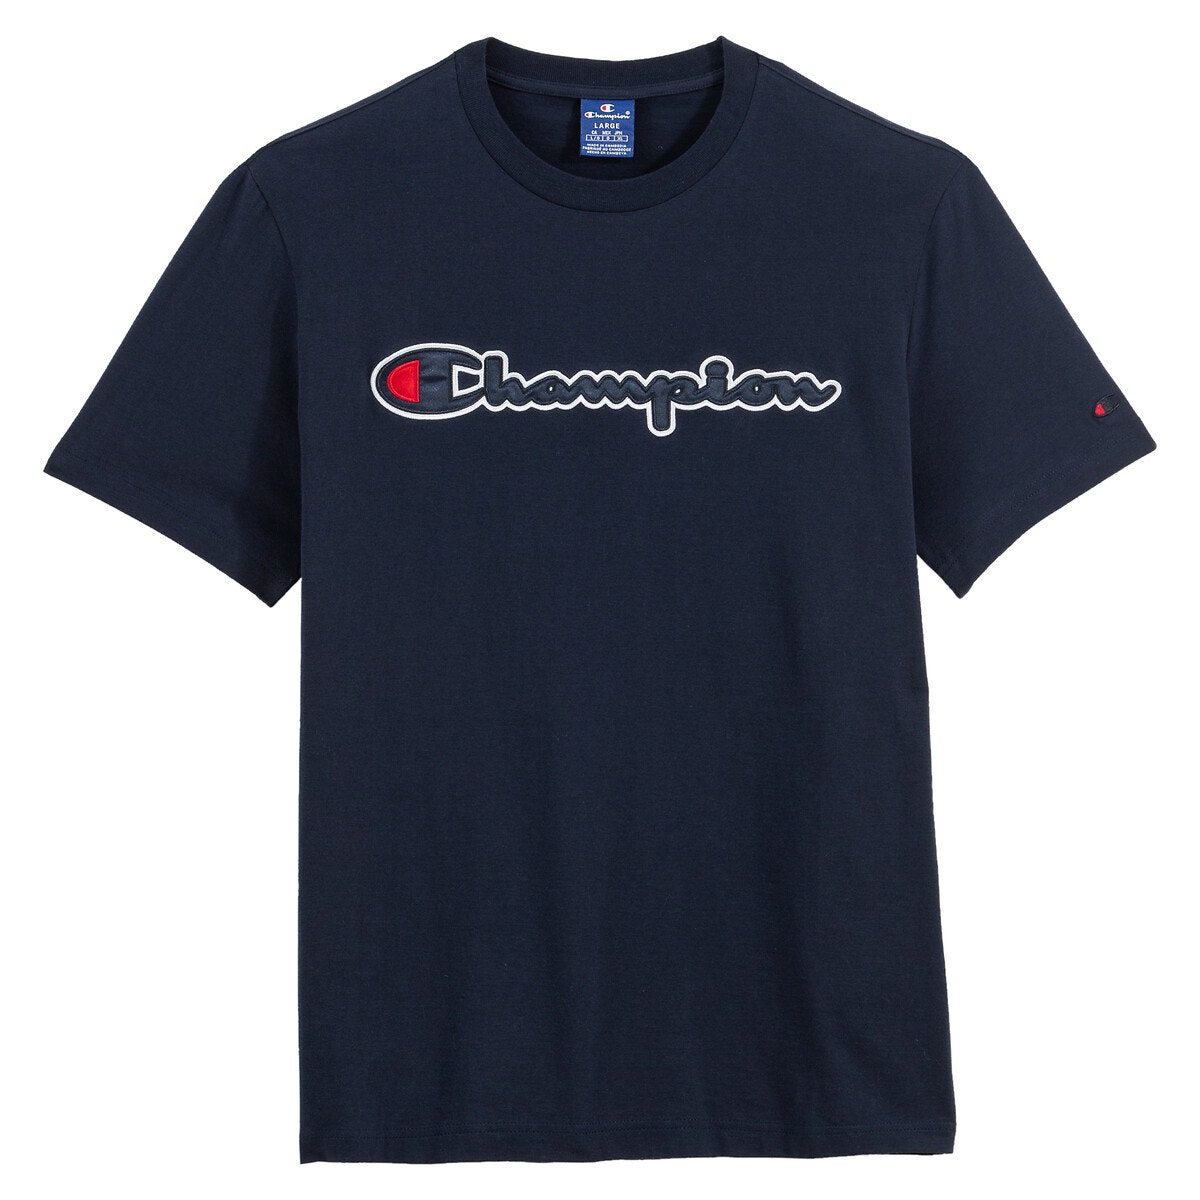 ΑΝΔΡΑΣ | Μπλούζες & Πουκάμισα | T-shirts Κοντομάνικο T-shirt με λογότυπο